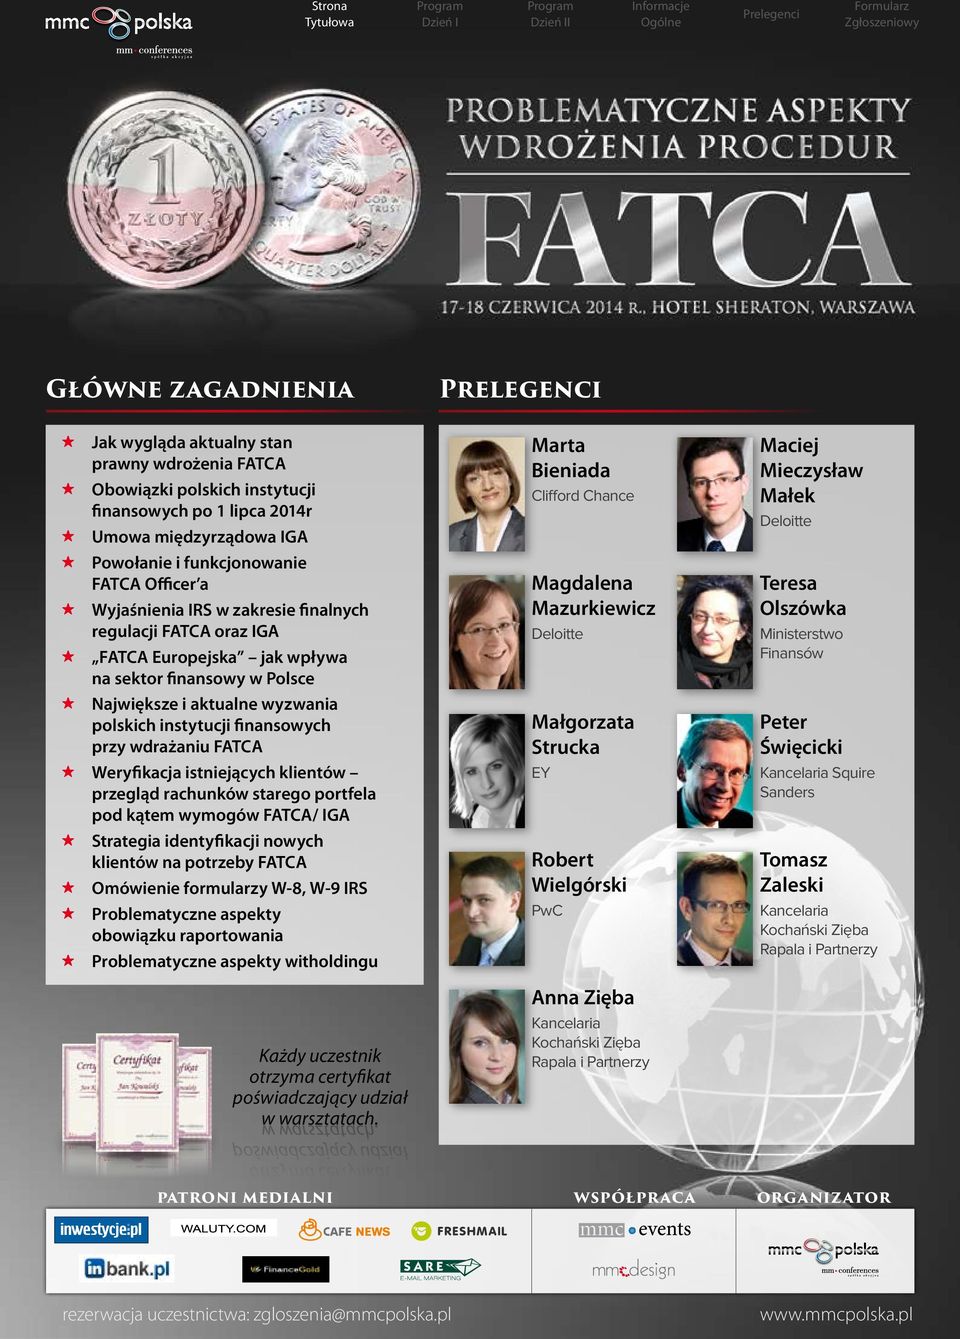 aktualne wyzwania polskich instytucji finansowych przy wdrażaniu FATCA Weryfikacja istniejących klientów przegląd rachunków starego portfela pod kątem wymogów FATCA/ IGA Strategia identyfikacji